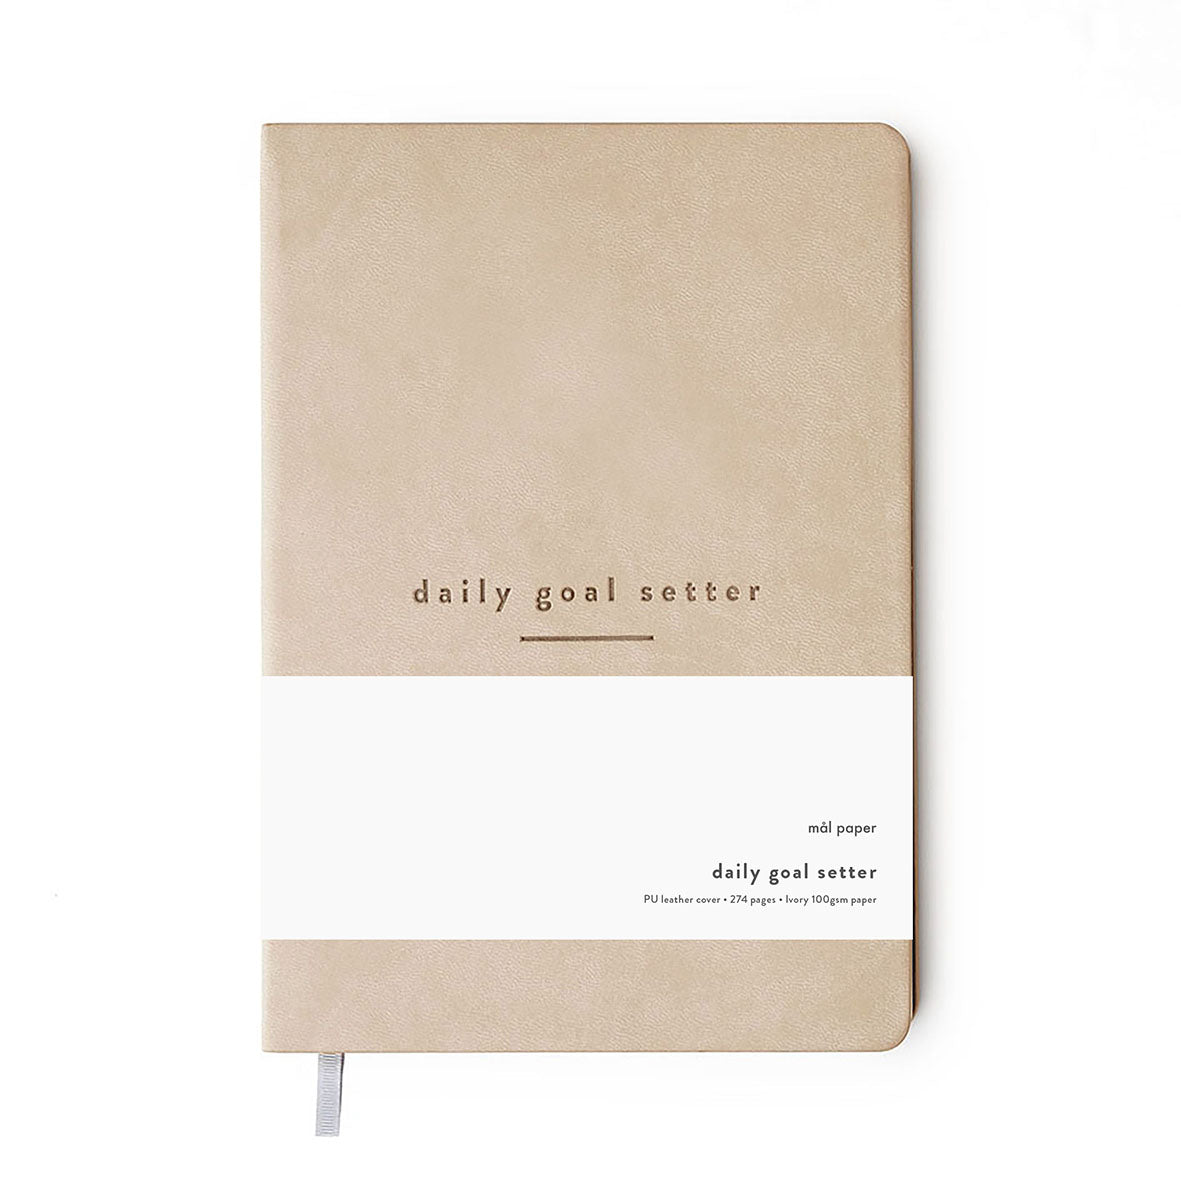 The Daily Goal Setter Journal